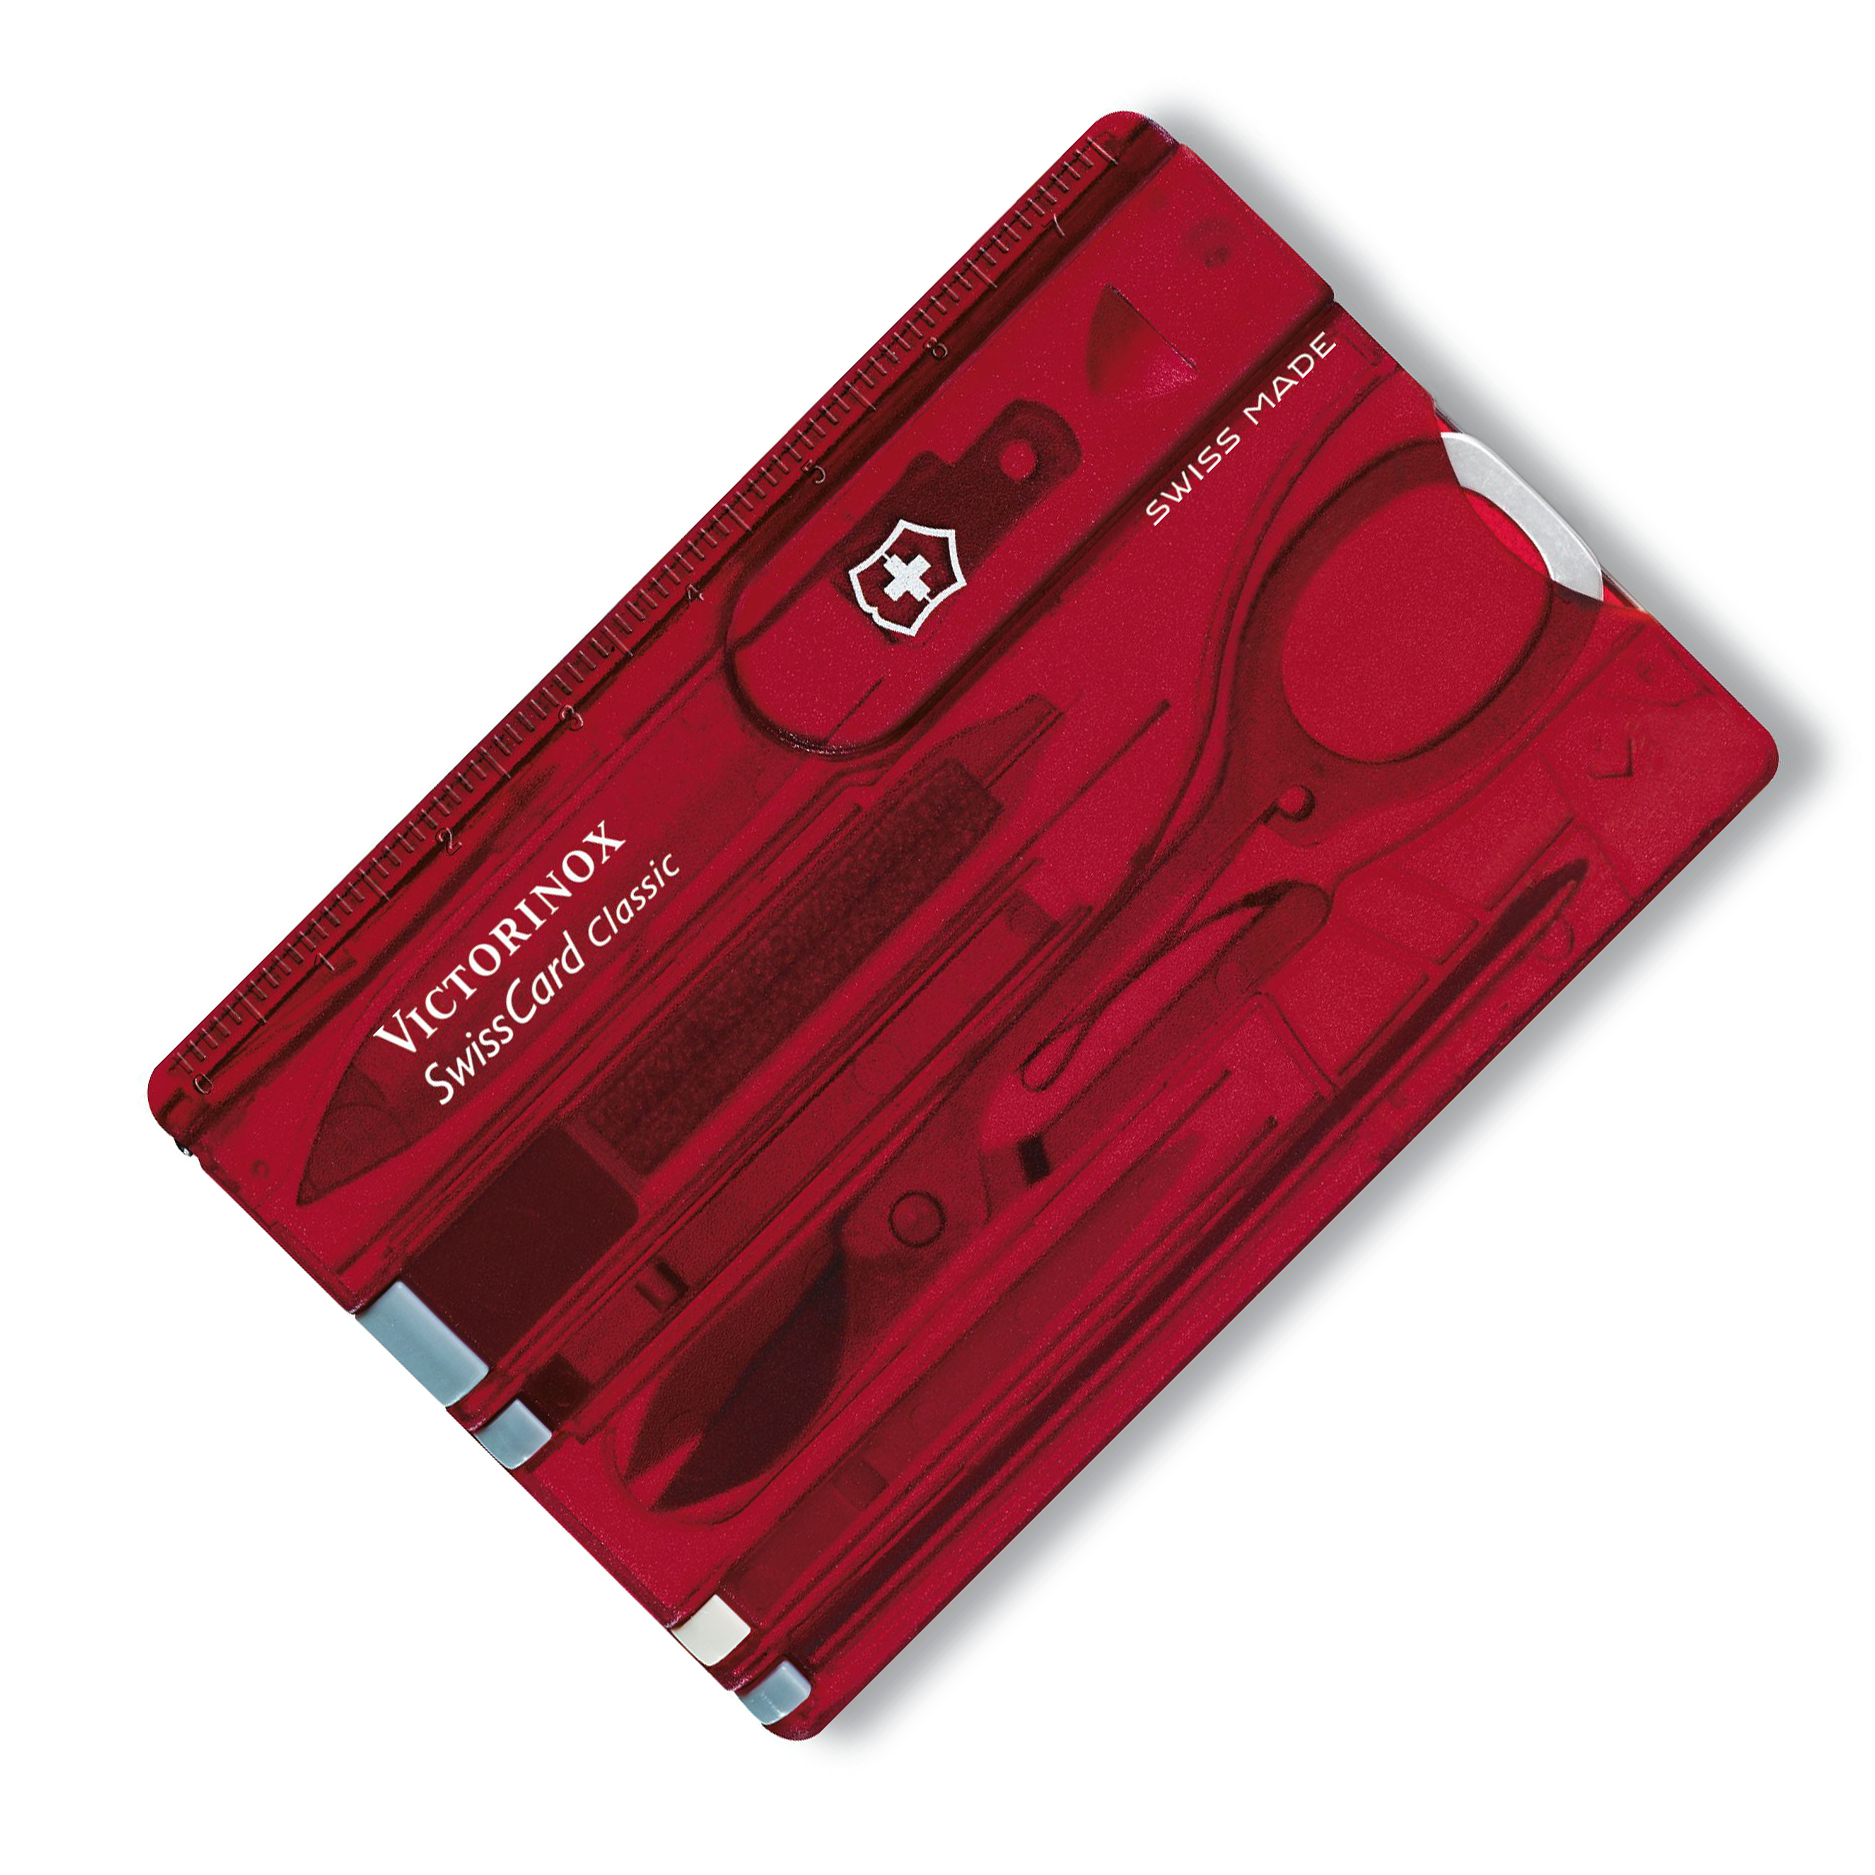 Швейцарская карта Victorinox SwissCard, сталь X45CrMoV15, рукоять ABS-Пластик, красный от Ножиков